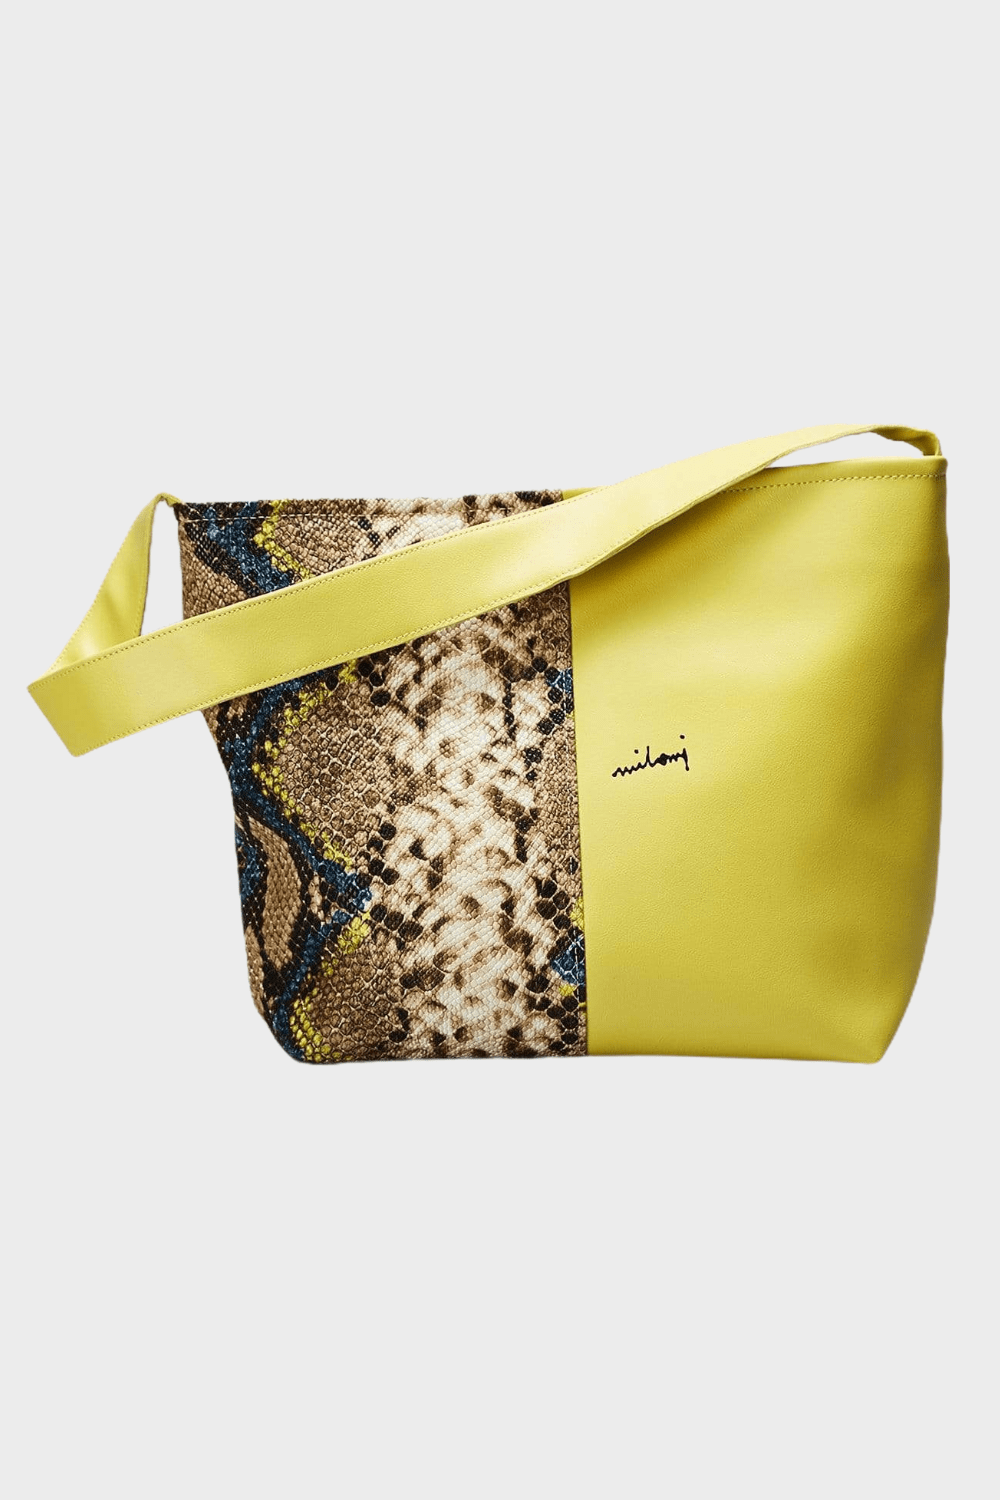 Marina Milani BAGS Yellow Elisa Yellow And Python Print Vegan Leather Tote Bag